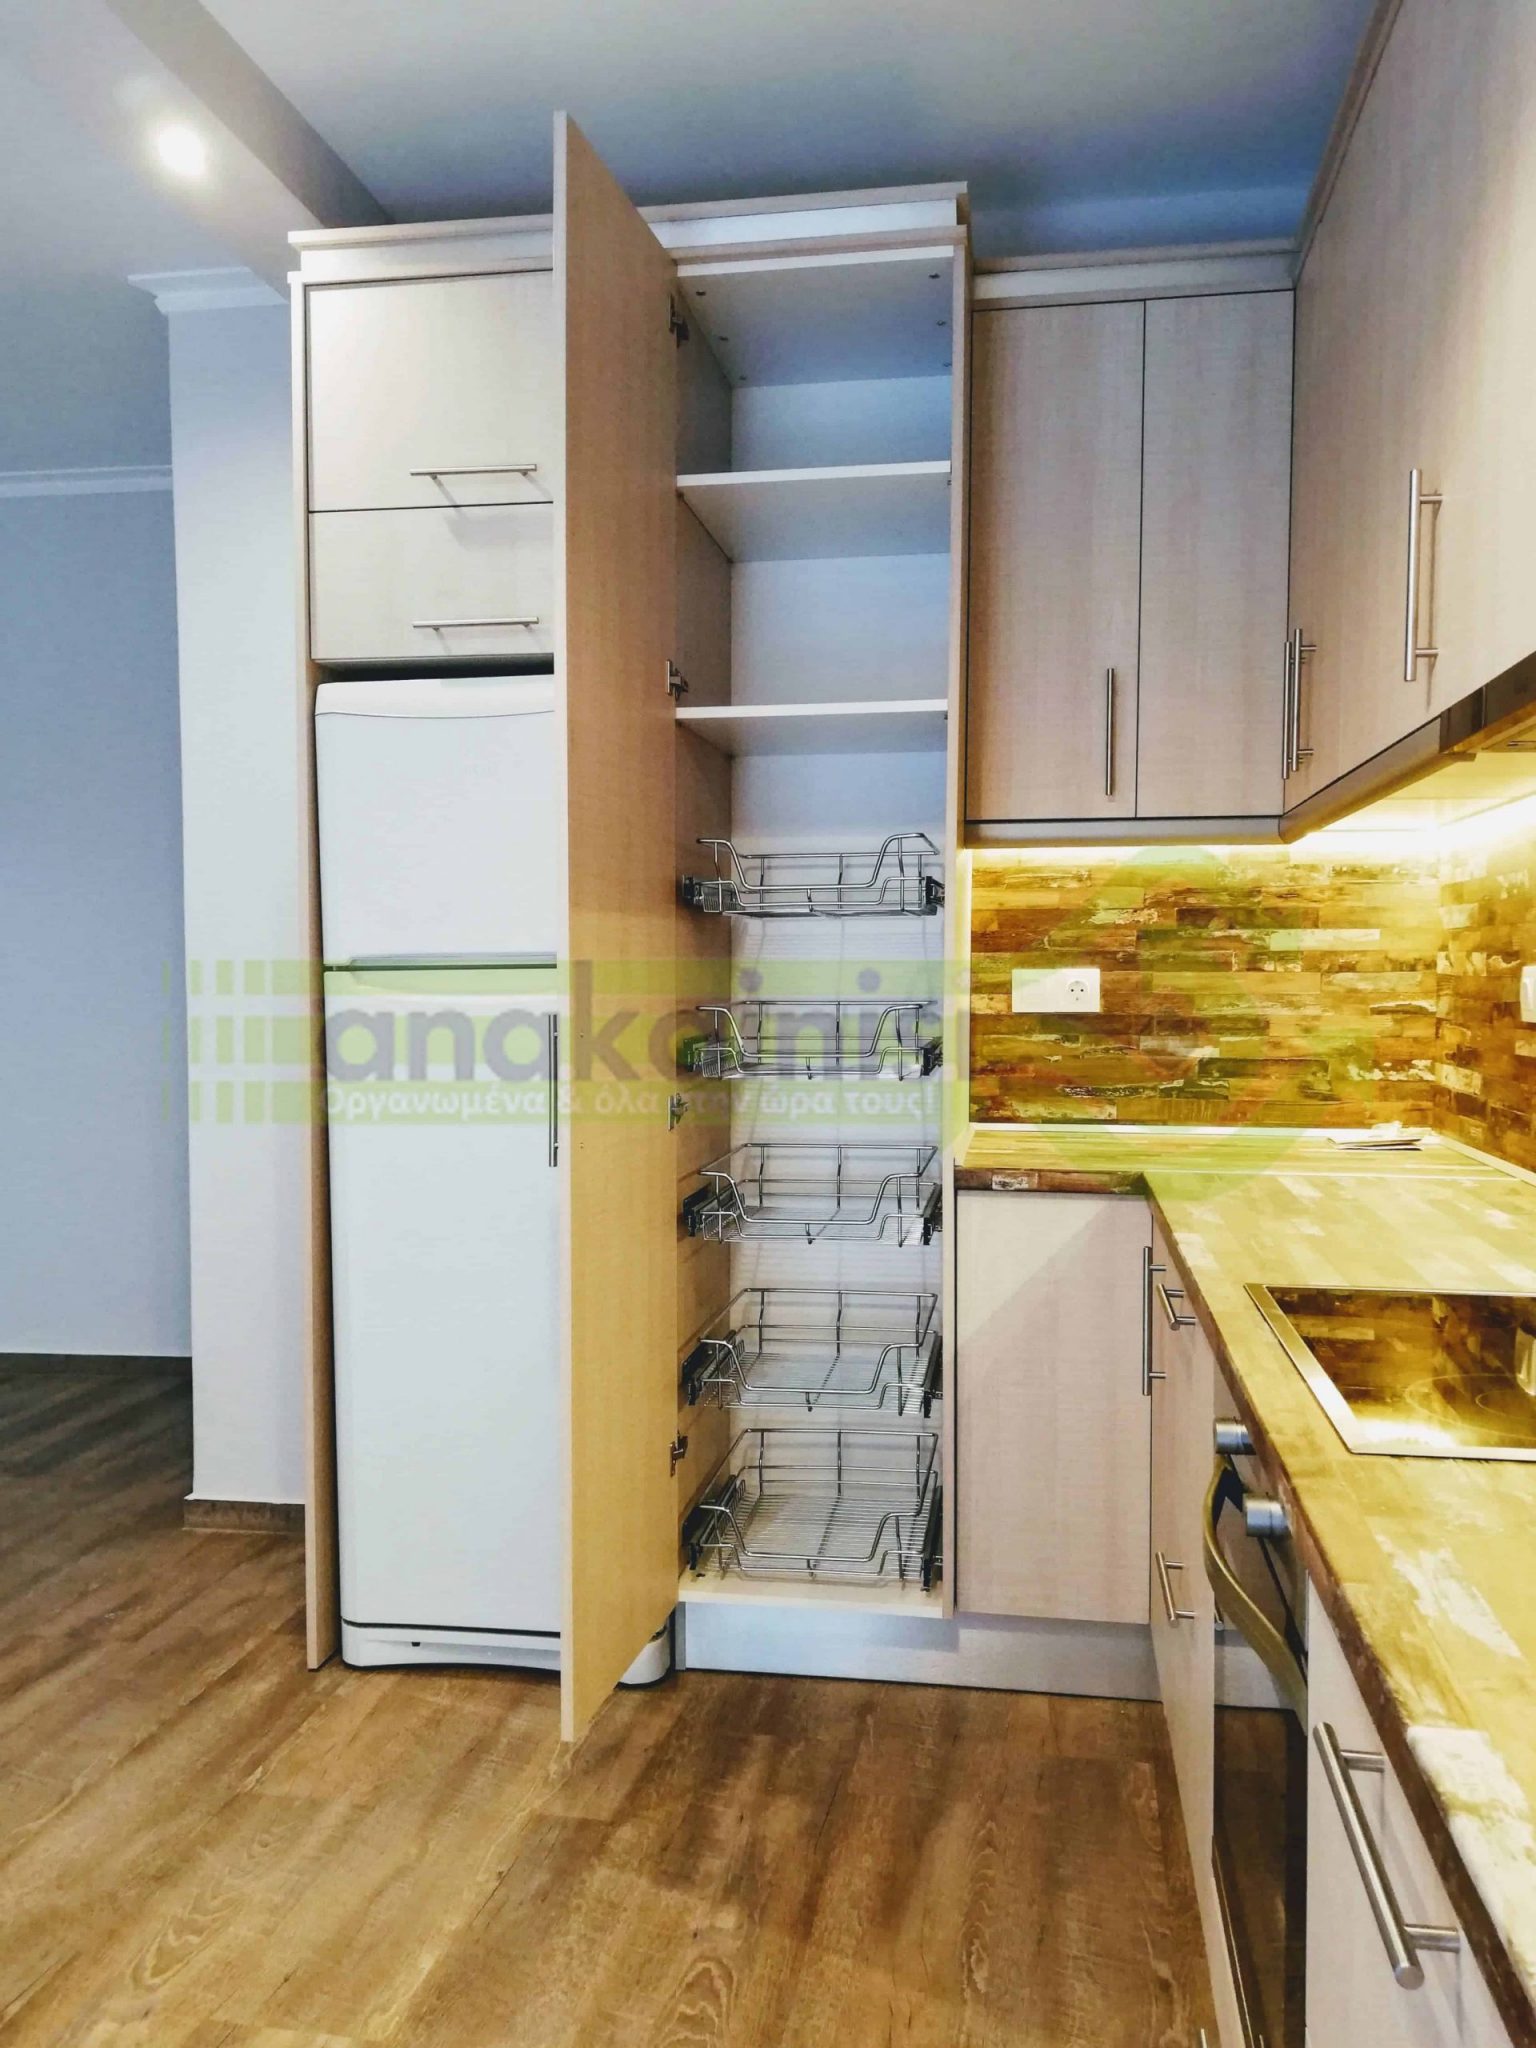 νιπτήρας inox - ντουλάπια - εντοιχισμένο ψυγείο - πάγκος και τοίχος σε σχήμα ξύλου βαμμένο